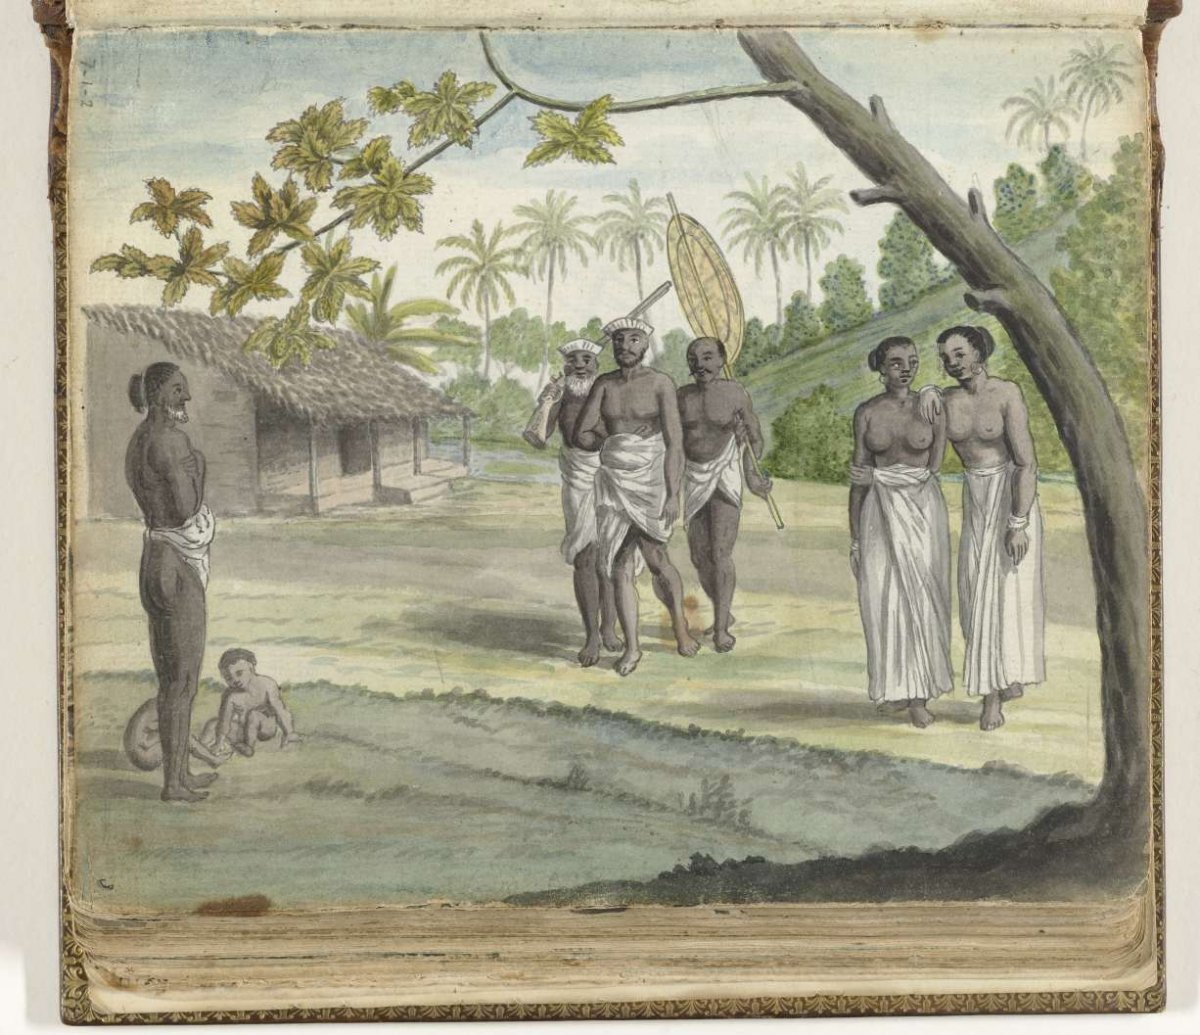 Lascorin or Sinhalese soldiers in Ceylon, Jan Brandes, 1785 - 1786